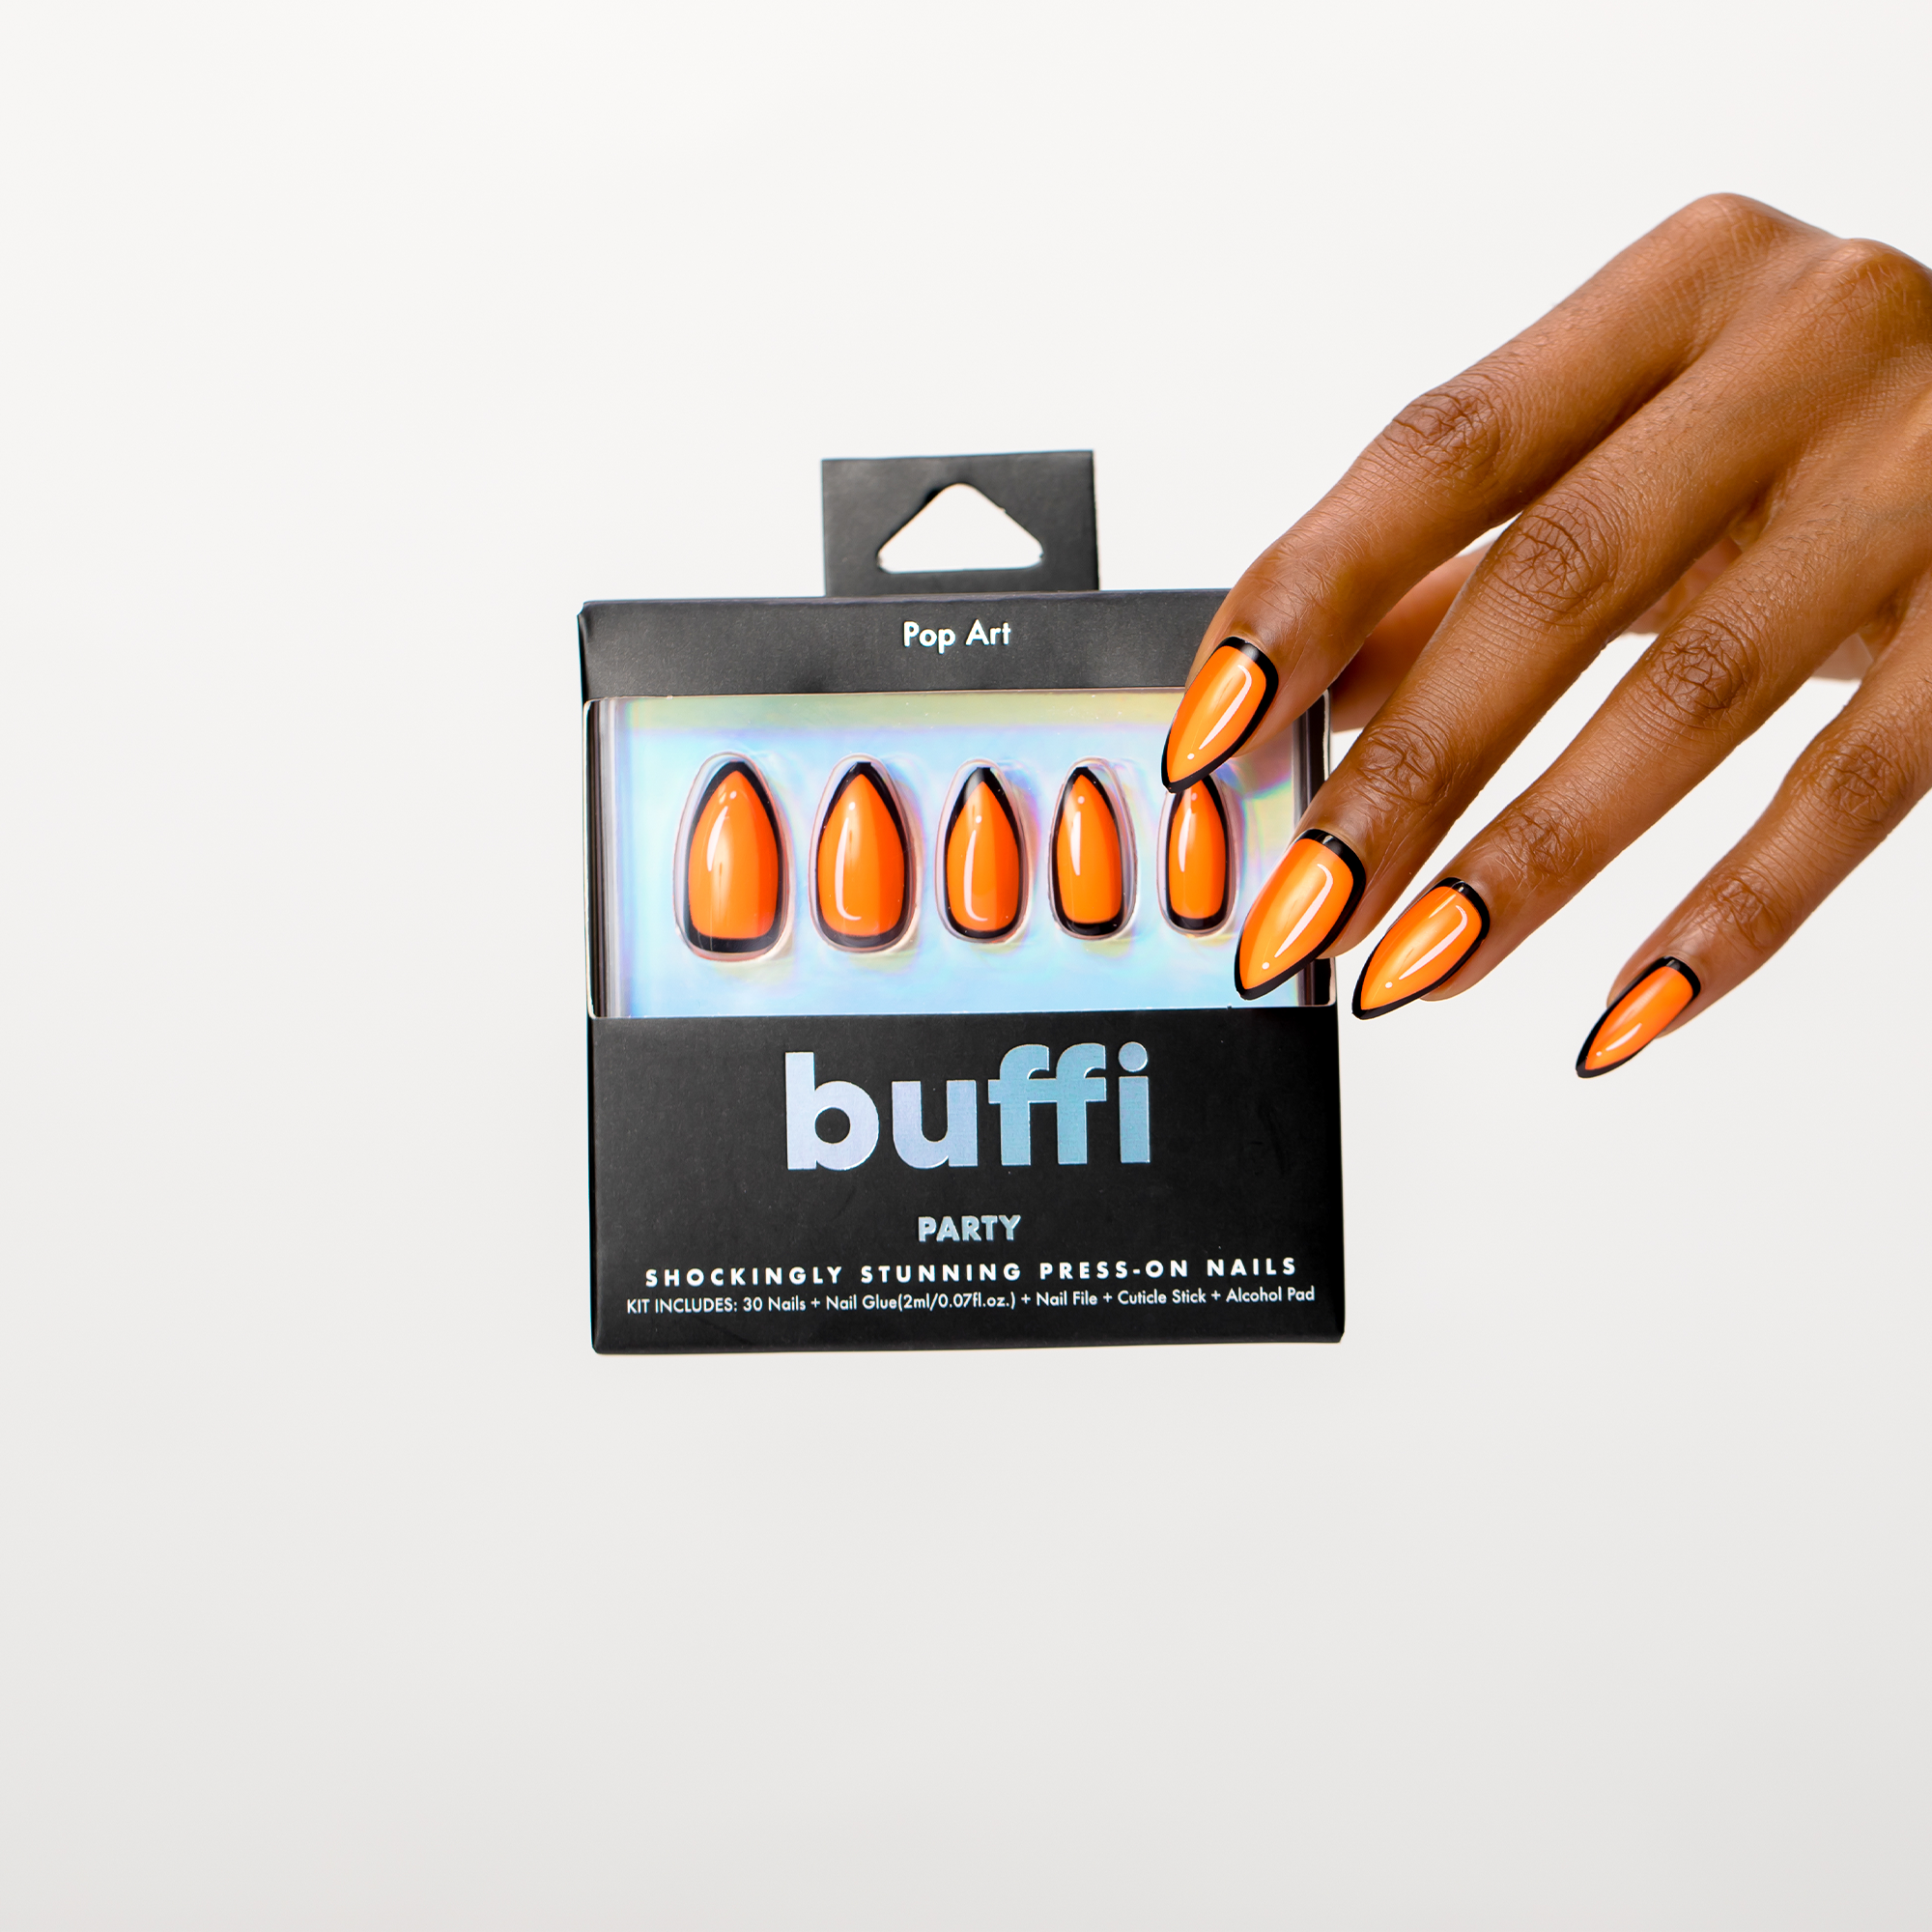 POP ART Buffi Press On Nails